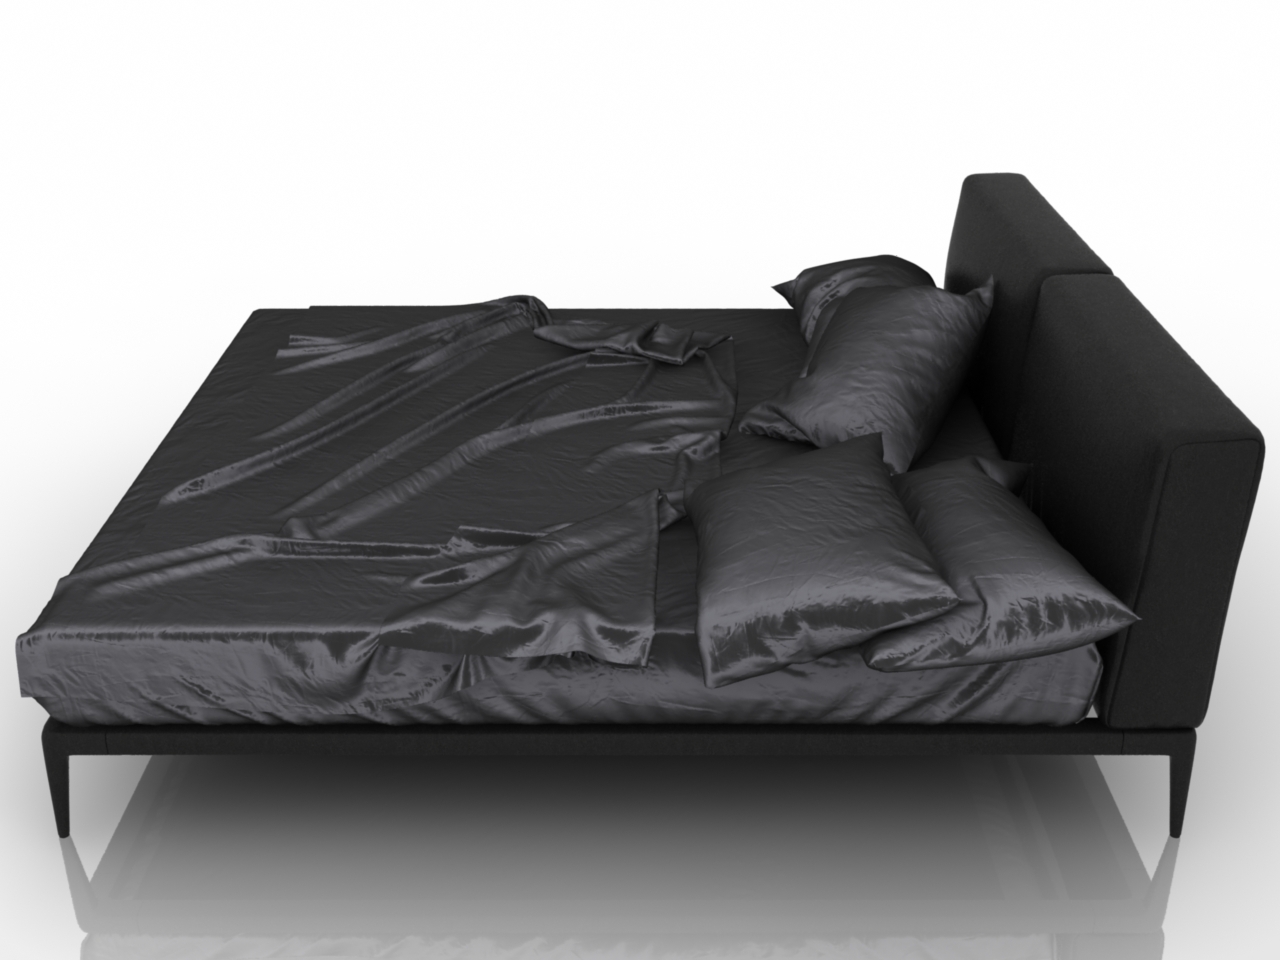 Пример 3D кровати